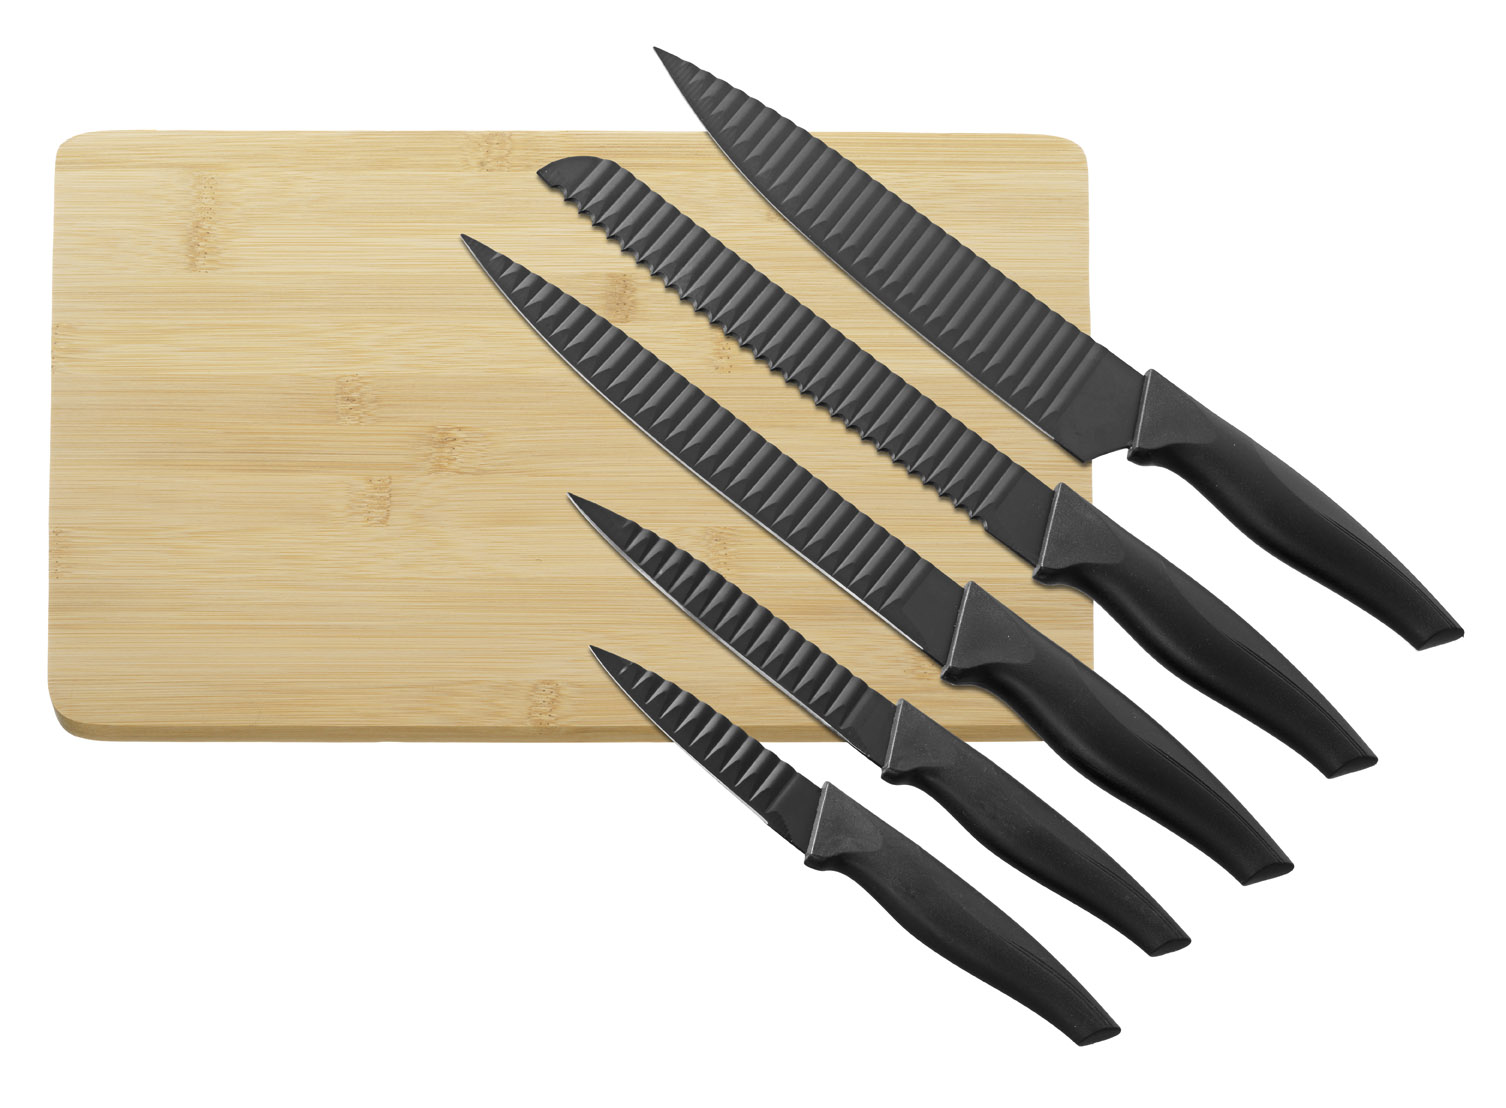 5-teiliges Messer-Set ORBIT mit Schneidbrett aus Bambus. Edelstahl-Klingen mit "Lufttaschen" gegen Anhaften, Maße Brett 31x23x1cm.